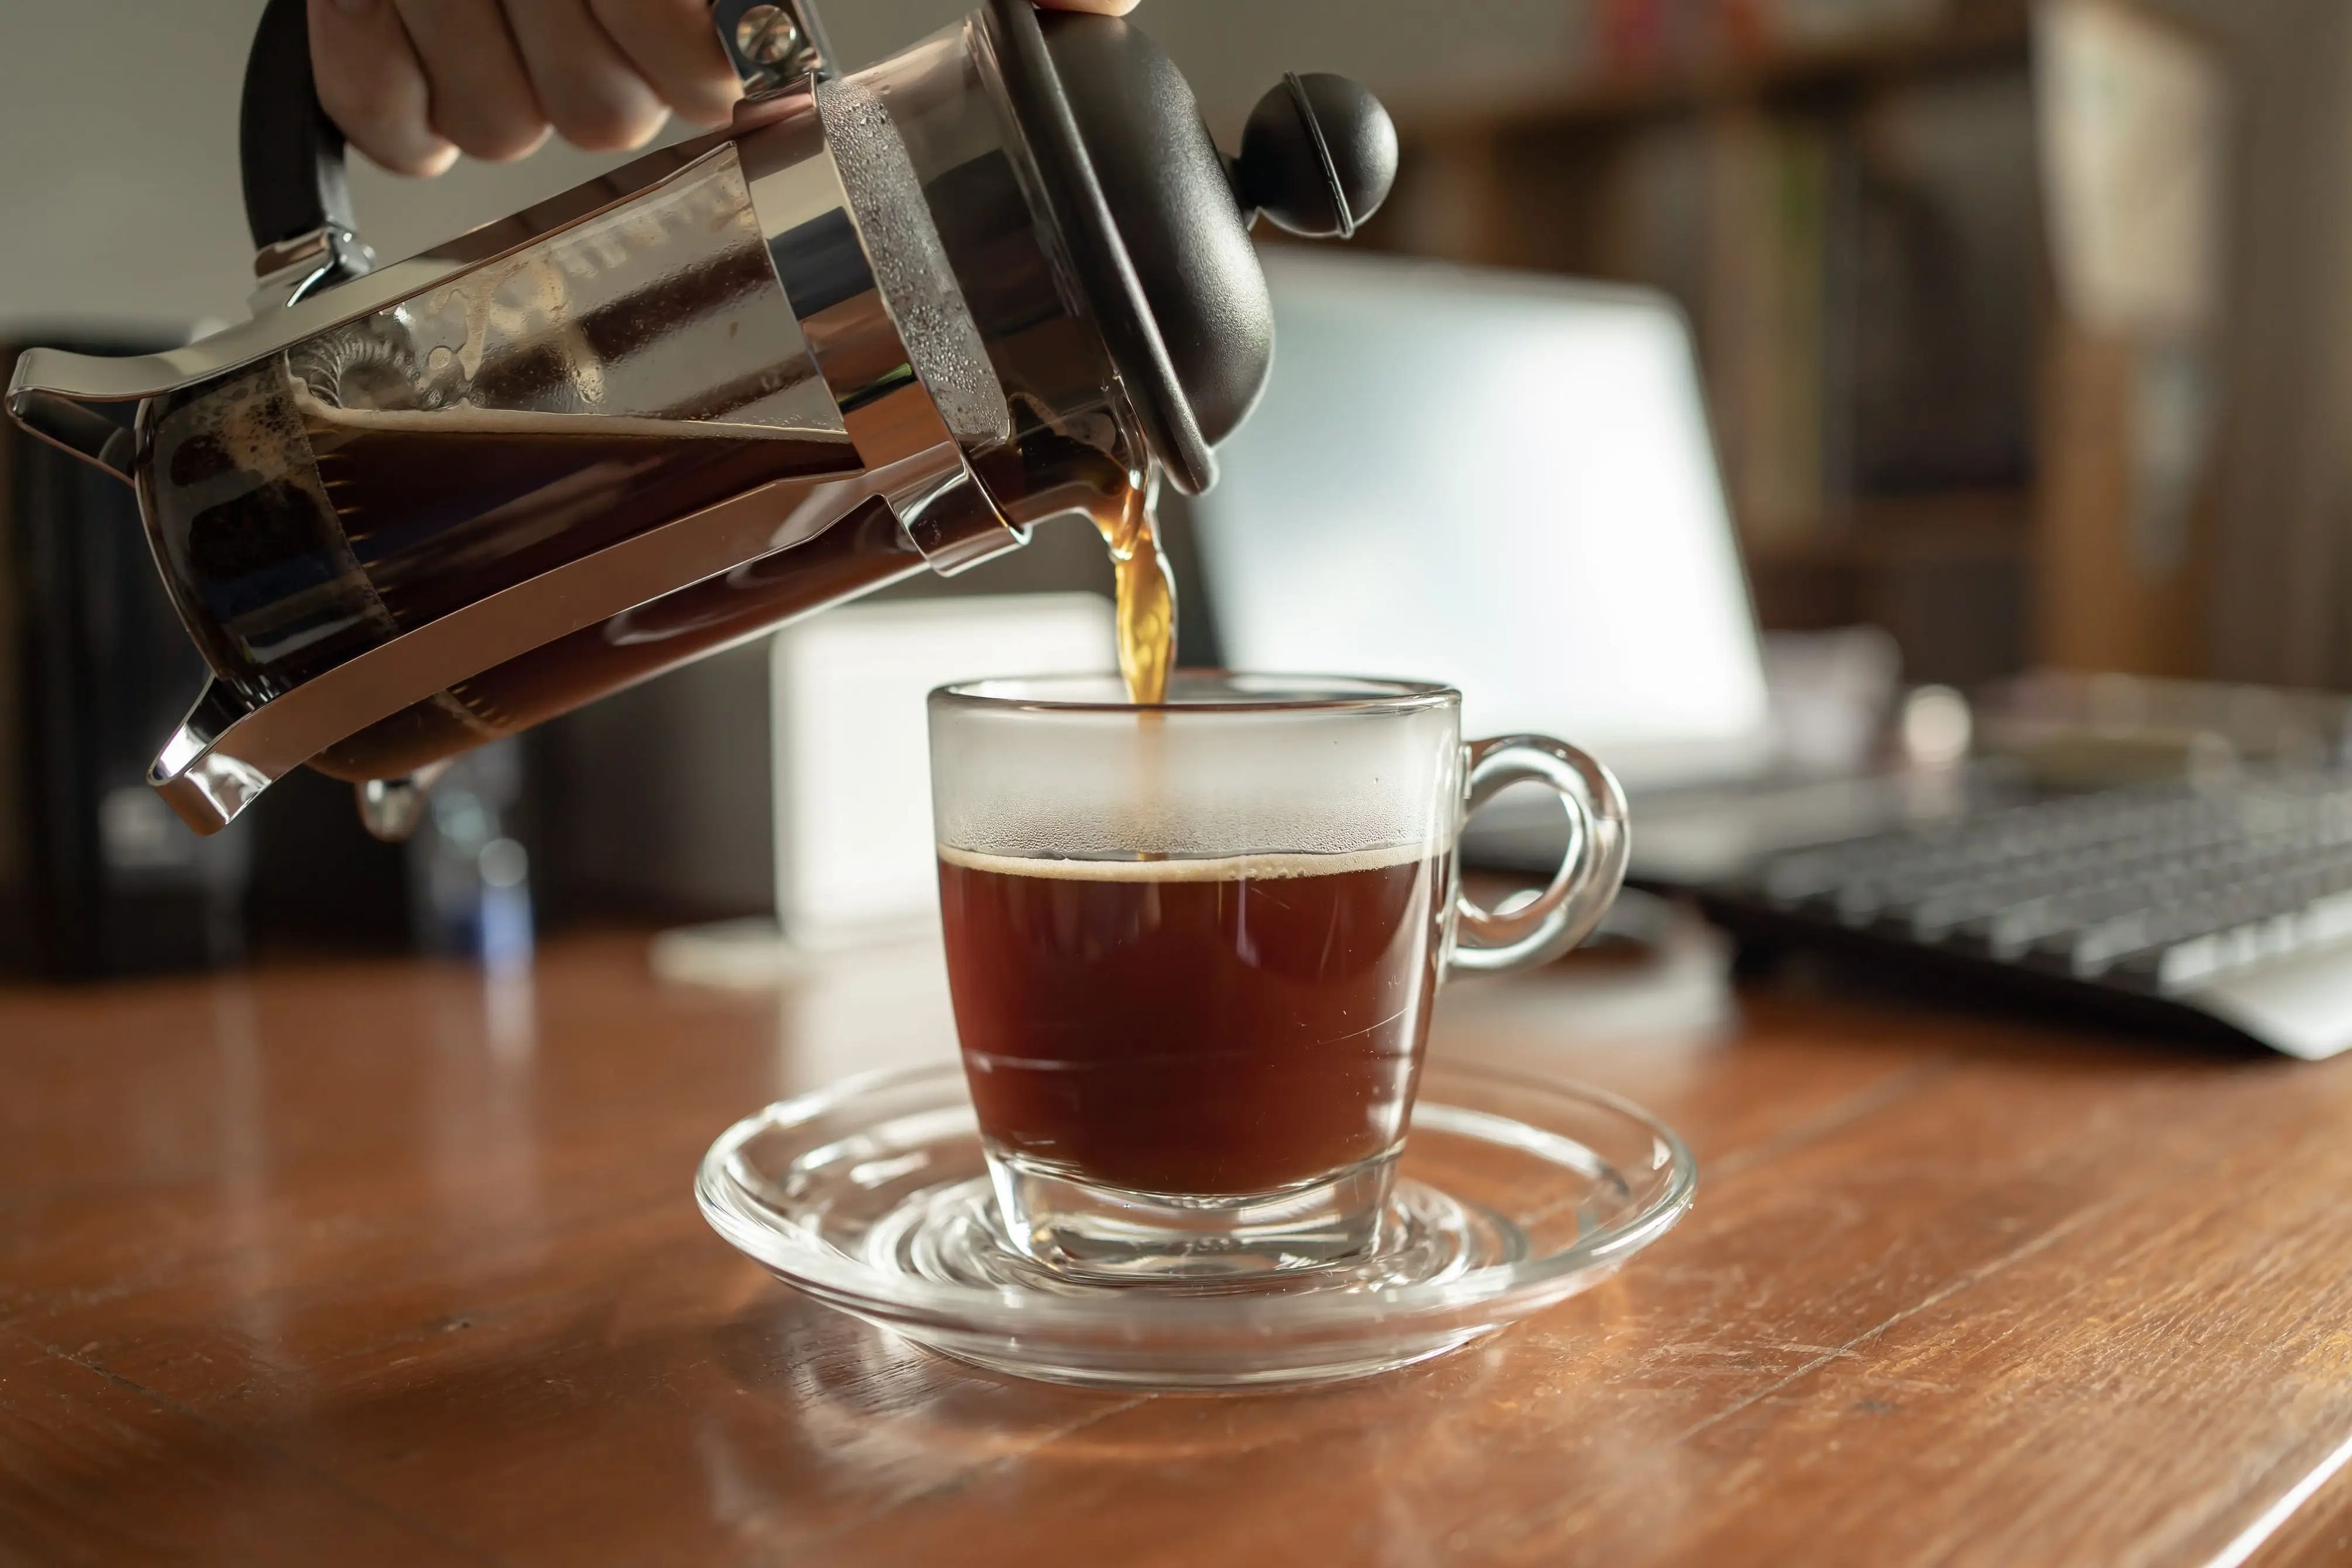 Preparar un buen café en casa empieza por elegir la mejor máquina